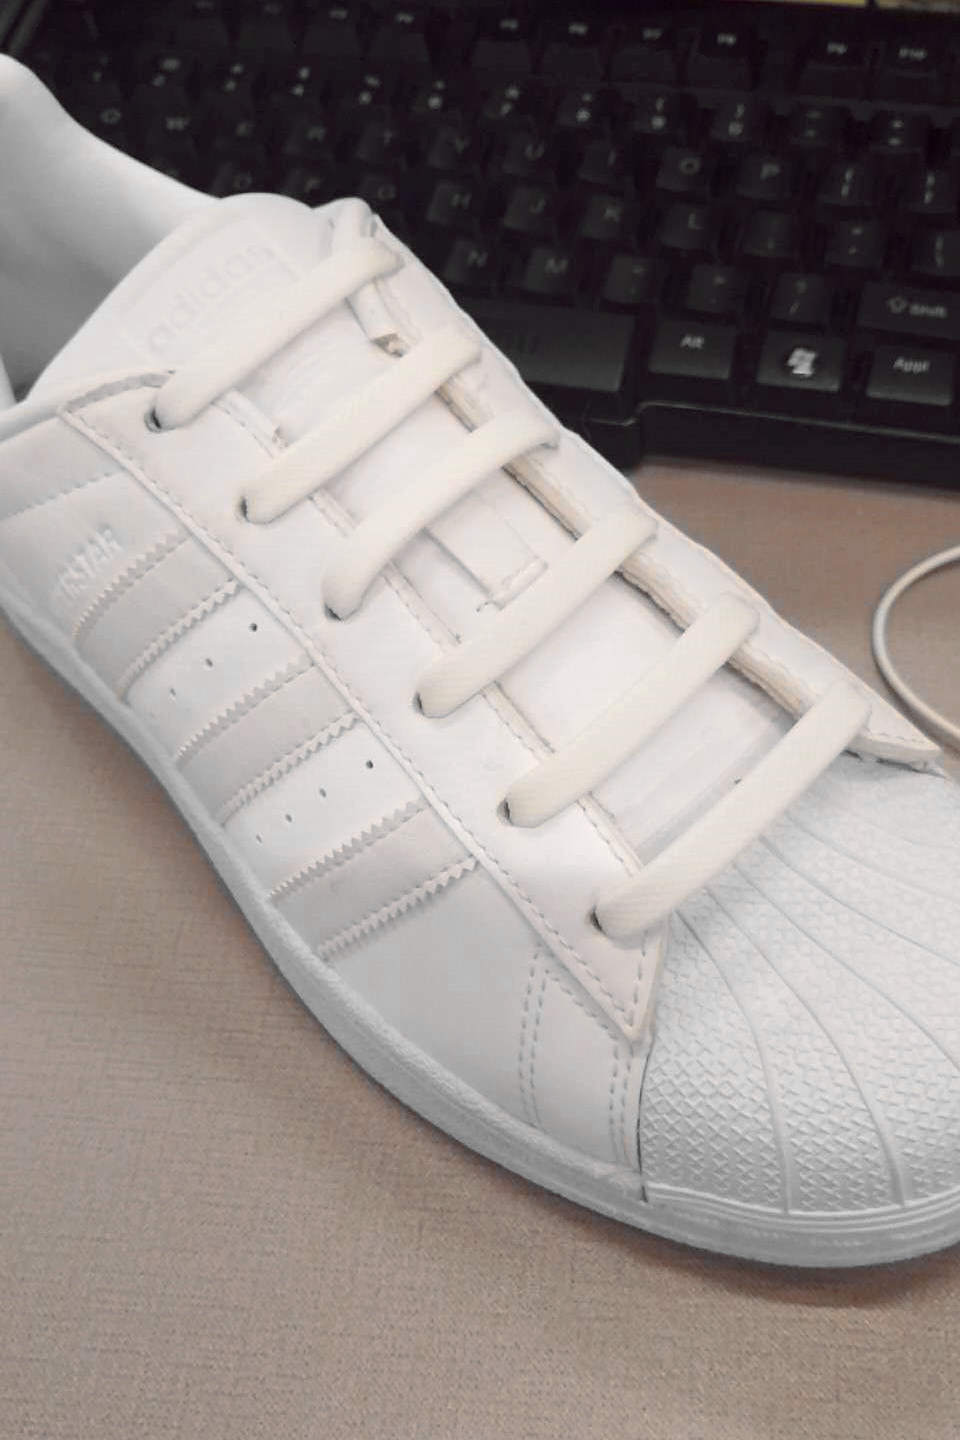 鞋带的系解: 小编找来了6孔的鞋子来做示范 看上去就是一字系法